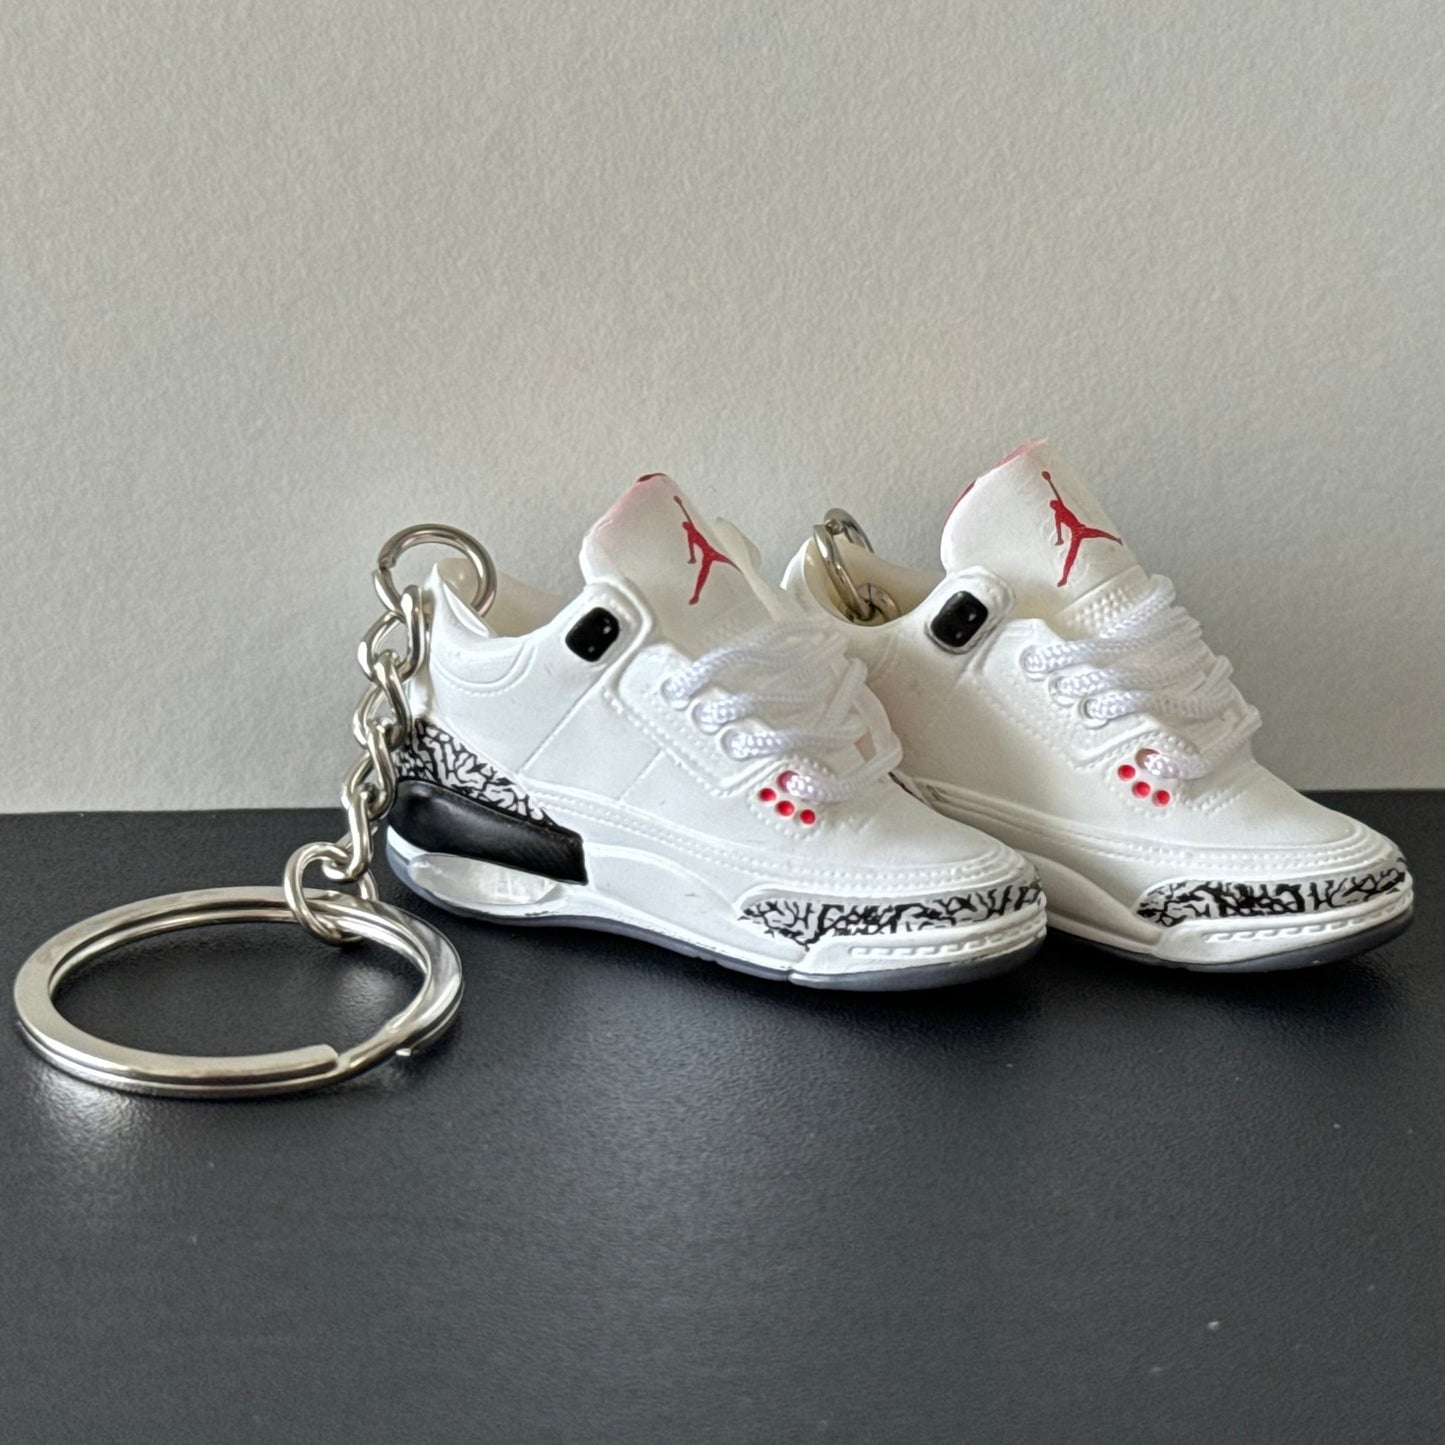 Air Jordan 3 3D Keyring -  "White Cement"